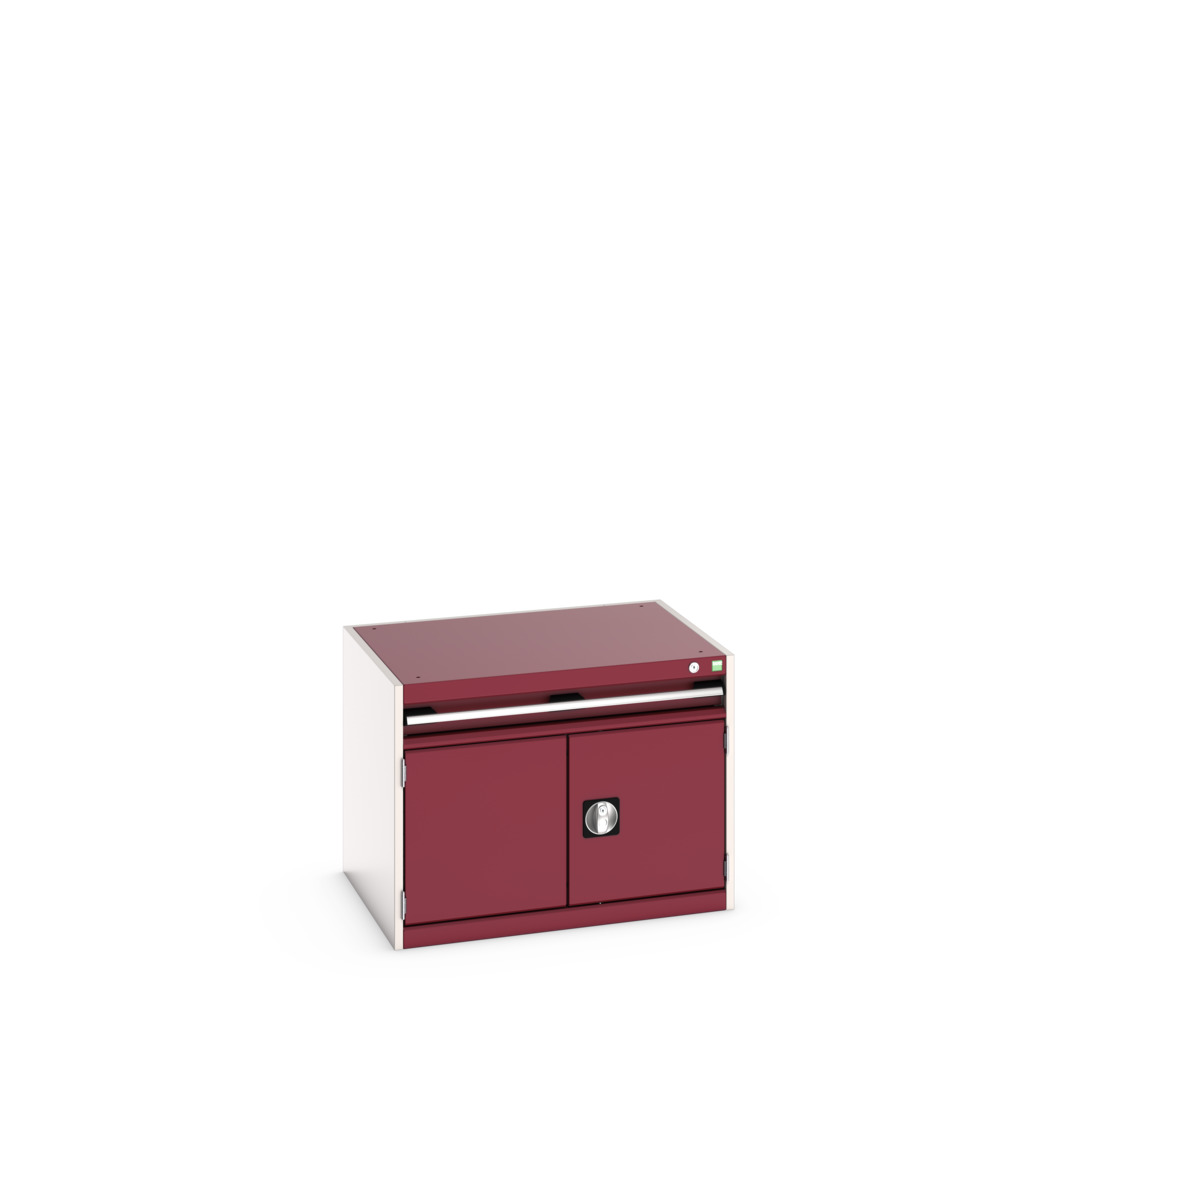 40020001.24V - cubio drawer-door cabinet